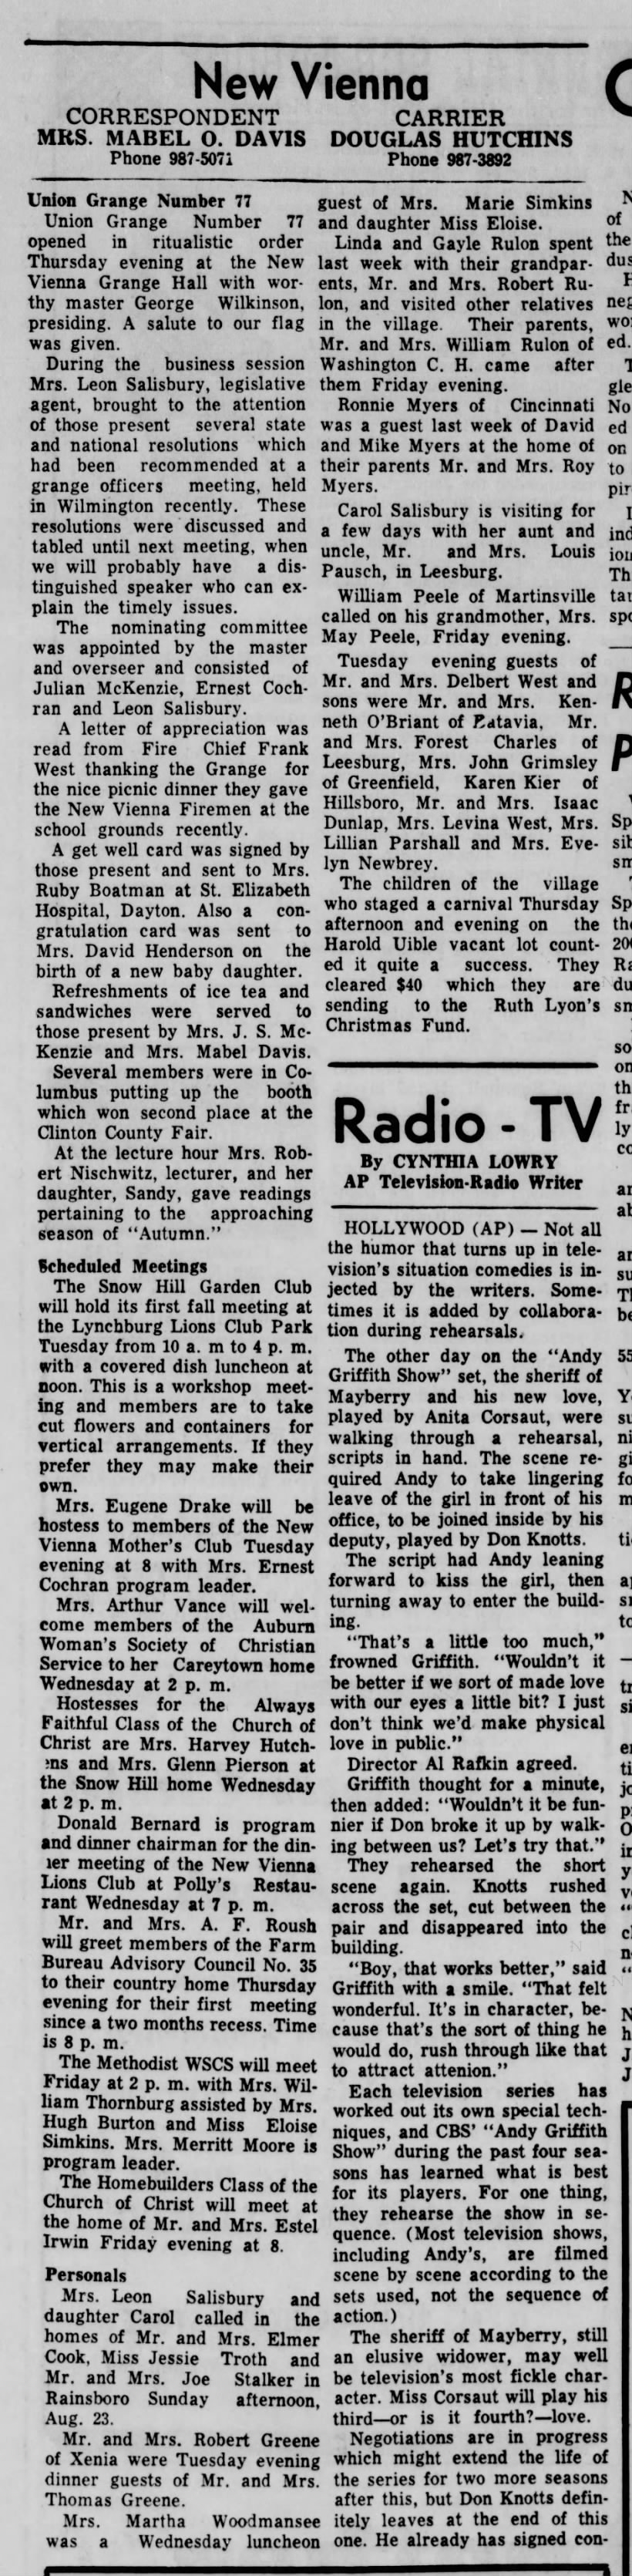 1964 New Vienna News -Aug.31